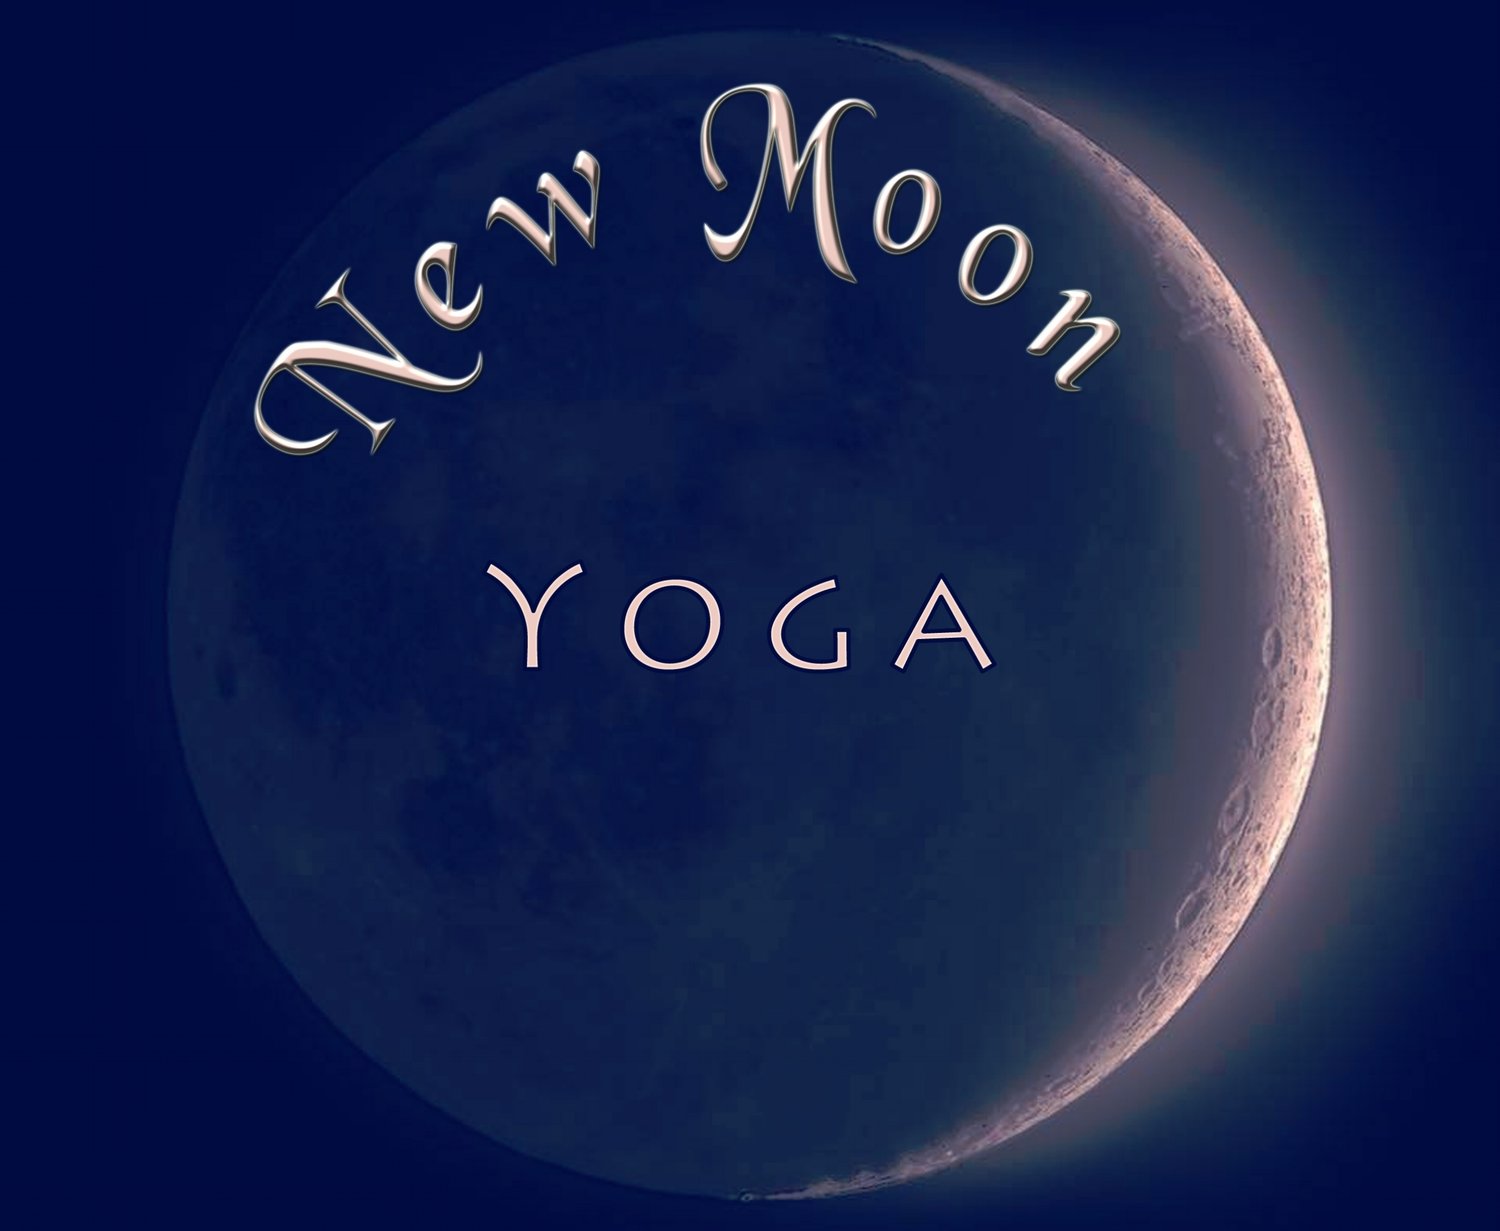 New Moon Yoga 